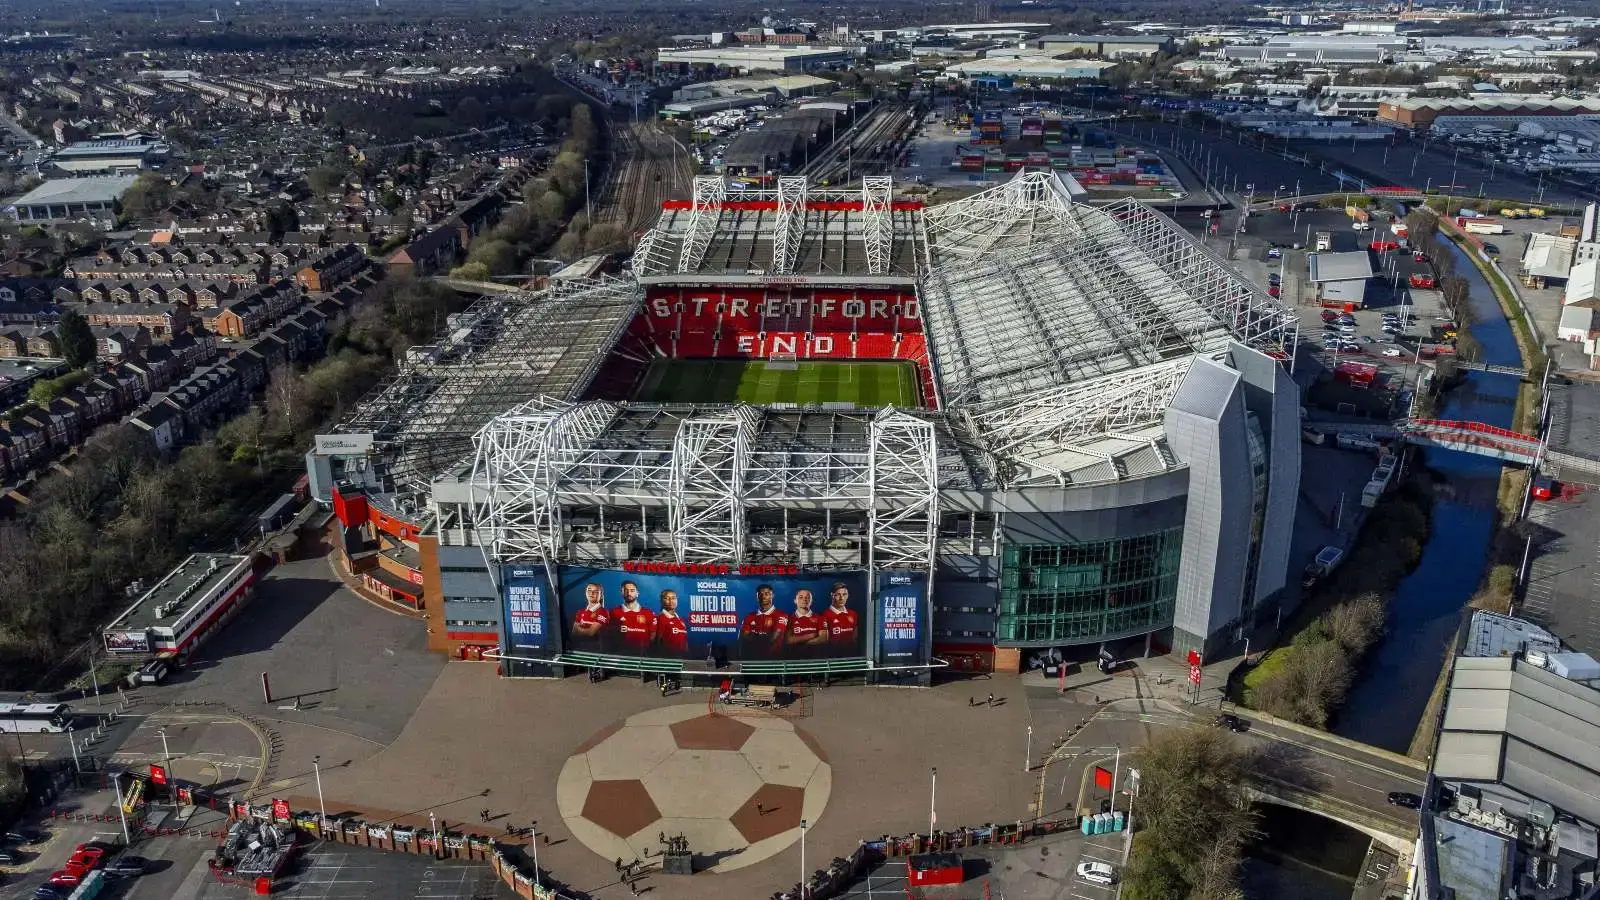 Sân vận động Old Trafford - Biểu tượng của Manchester United